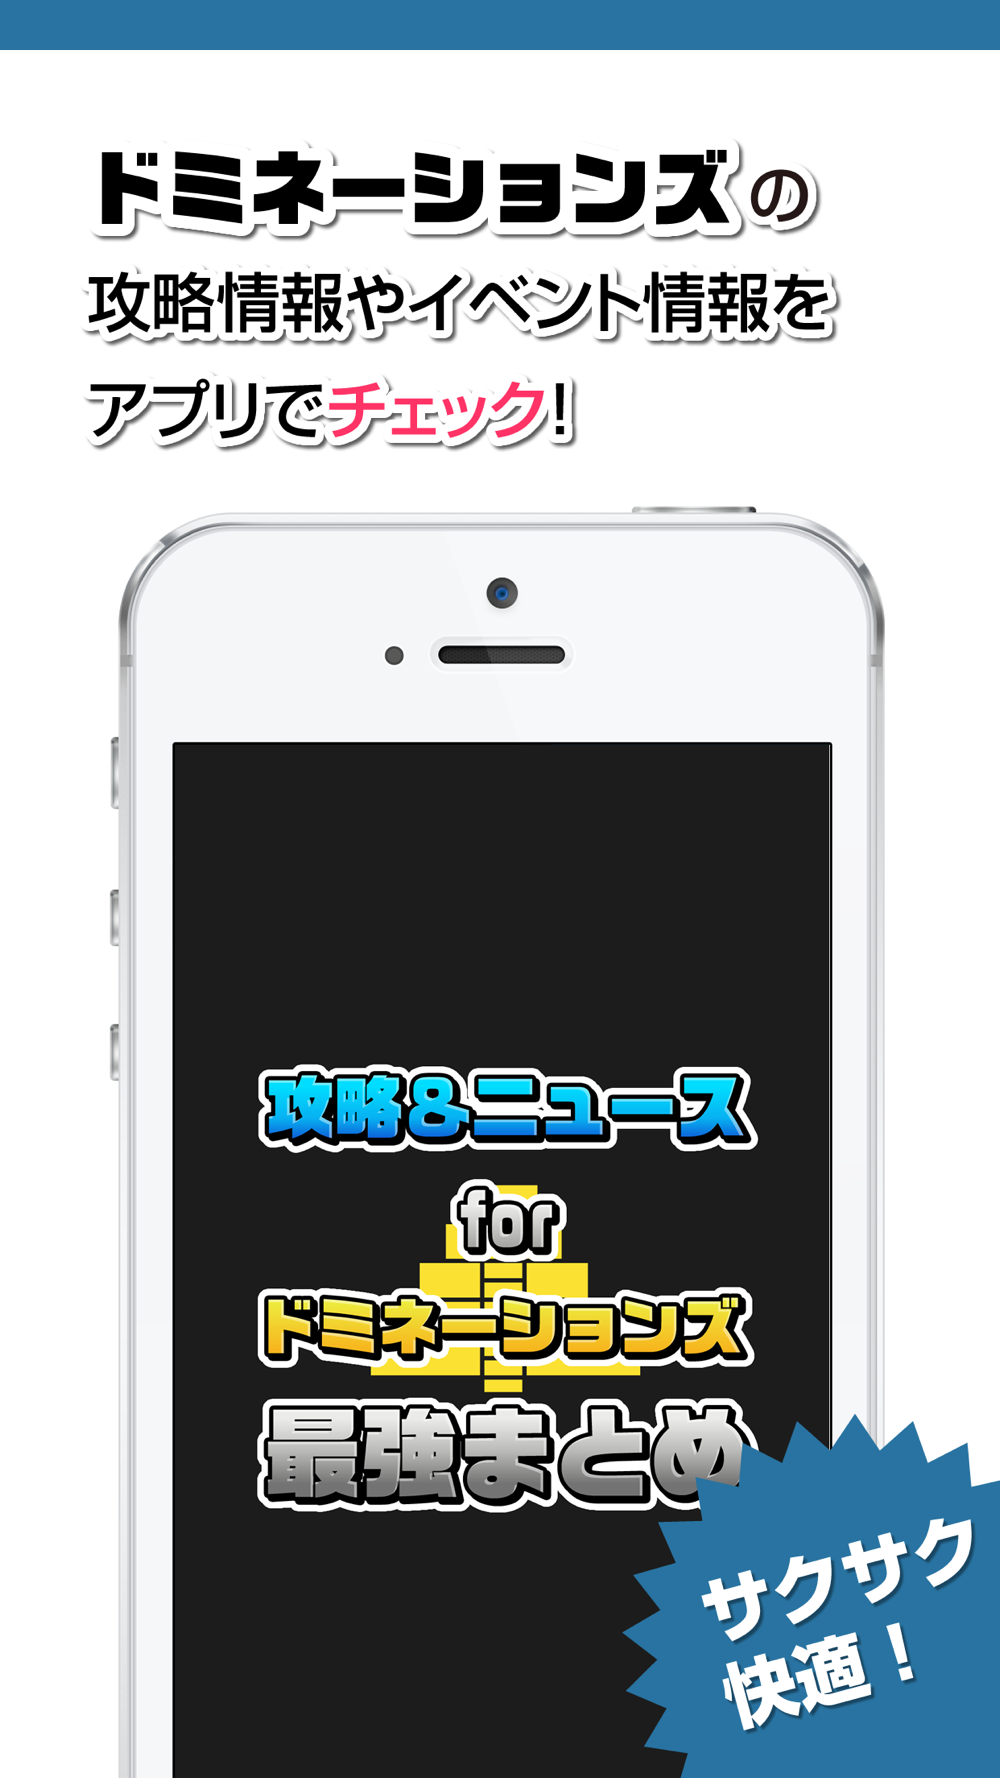 攻略ニュースまとめ速報 For ドミネーションズ 文明創造 Dominations Free Download App For Iphone Steprimo Com